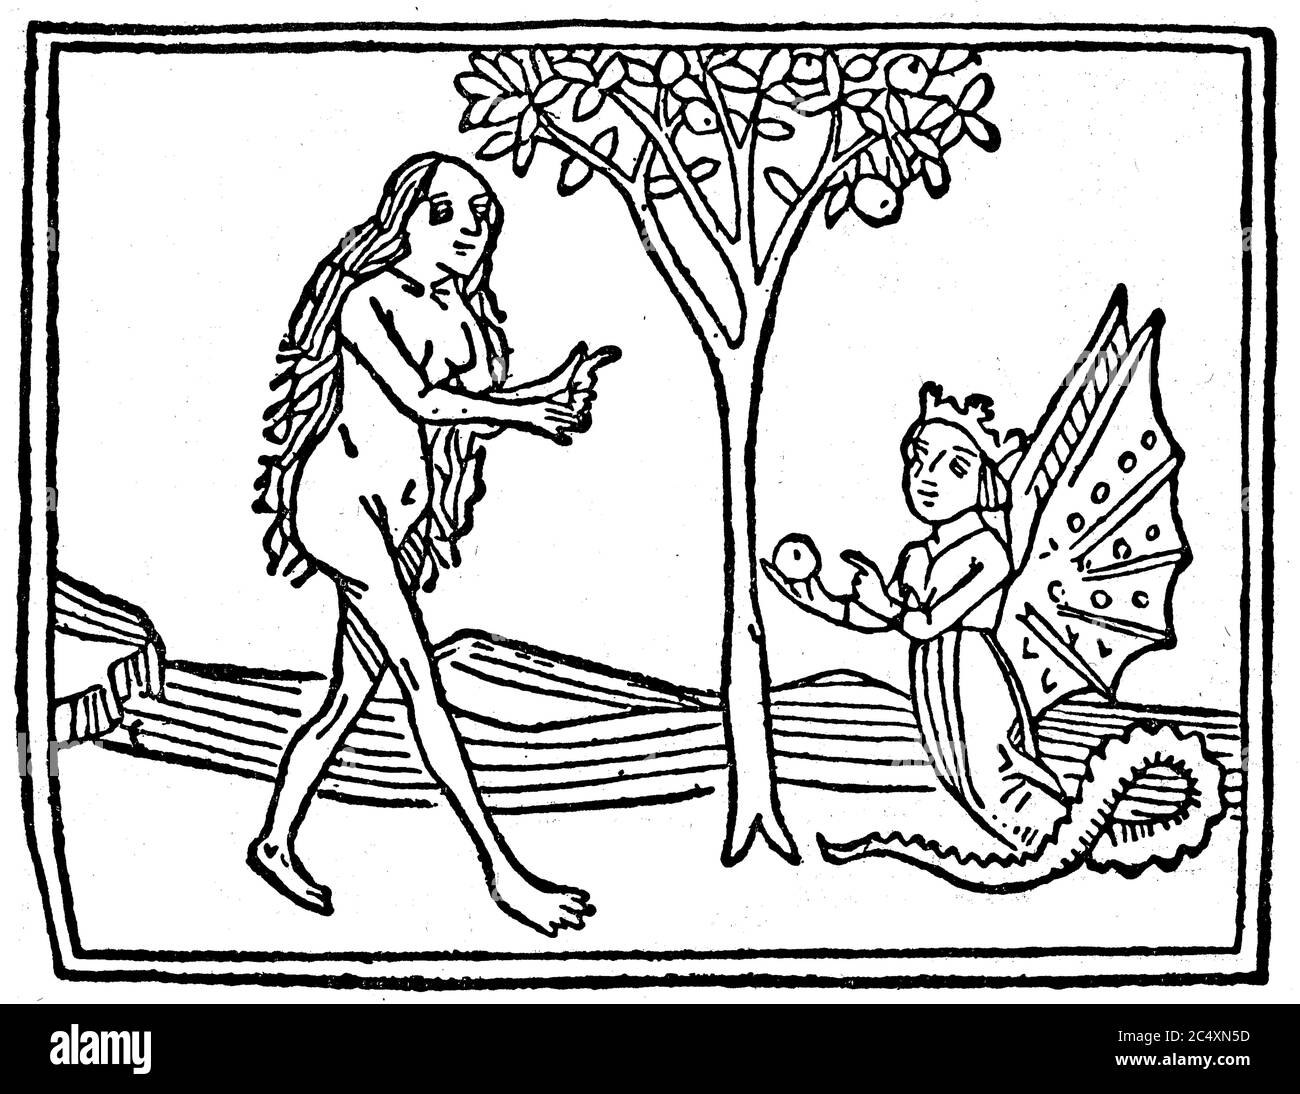 Mitos Medievais Eve-and-the-serpent-from-the-speculum-humanae-salvationis-1470-eva-und-die-schlange-aus-dem-speculum-humanae-salvationis-1470-2C4XN5D